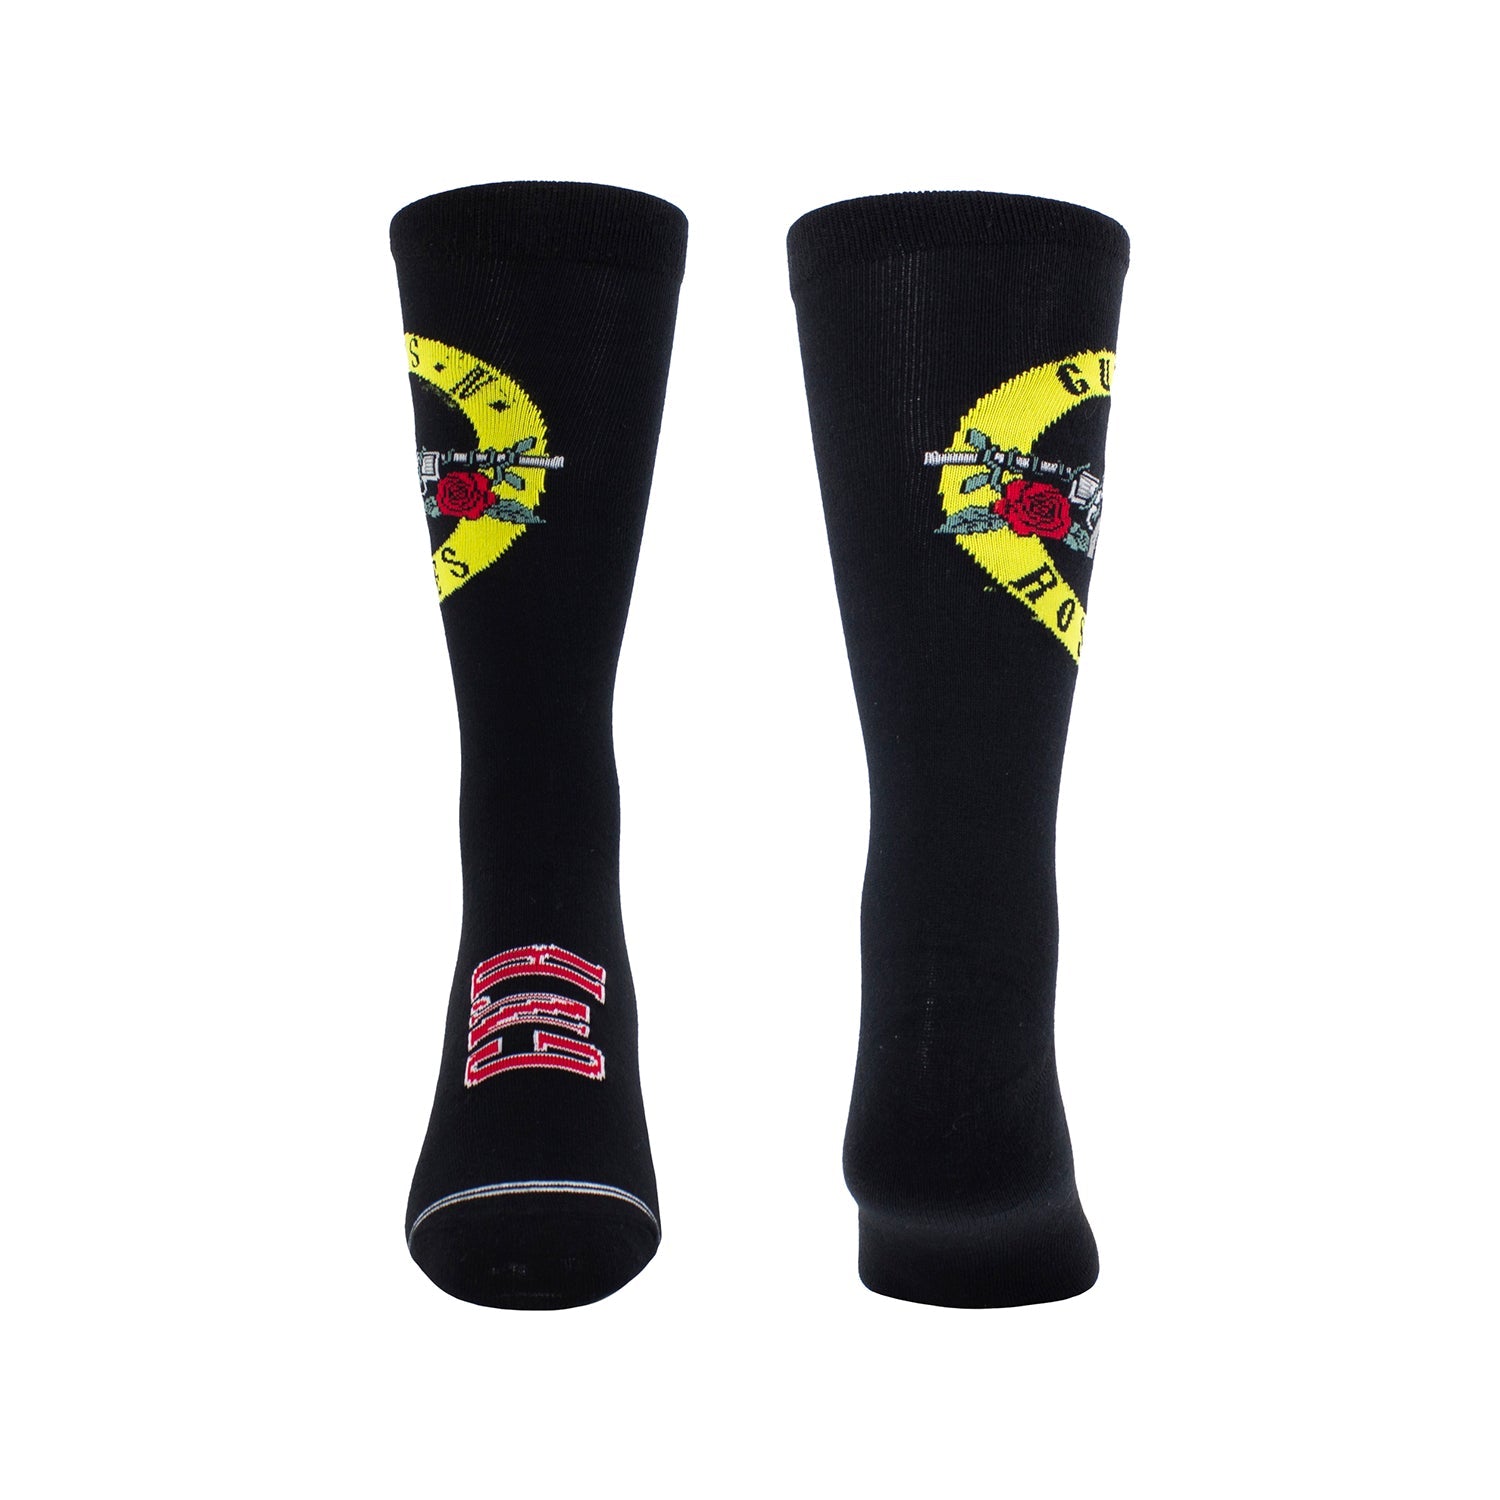 Guns N’ Roses Gift Boxed Crew Socks